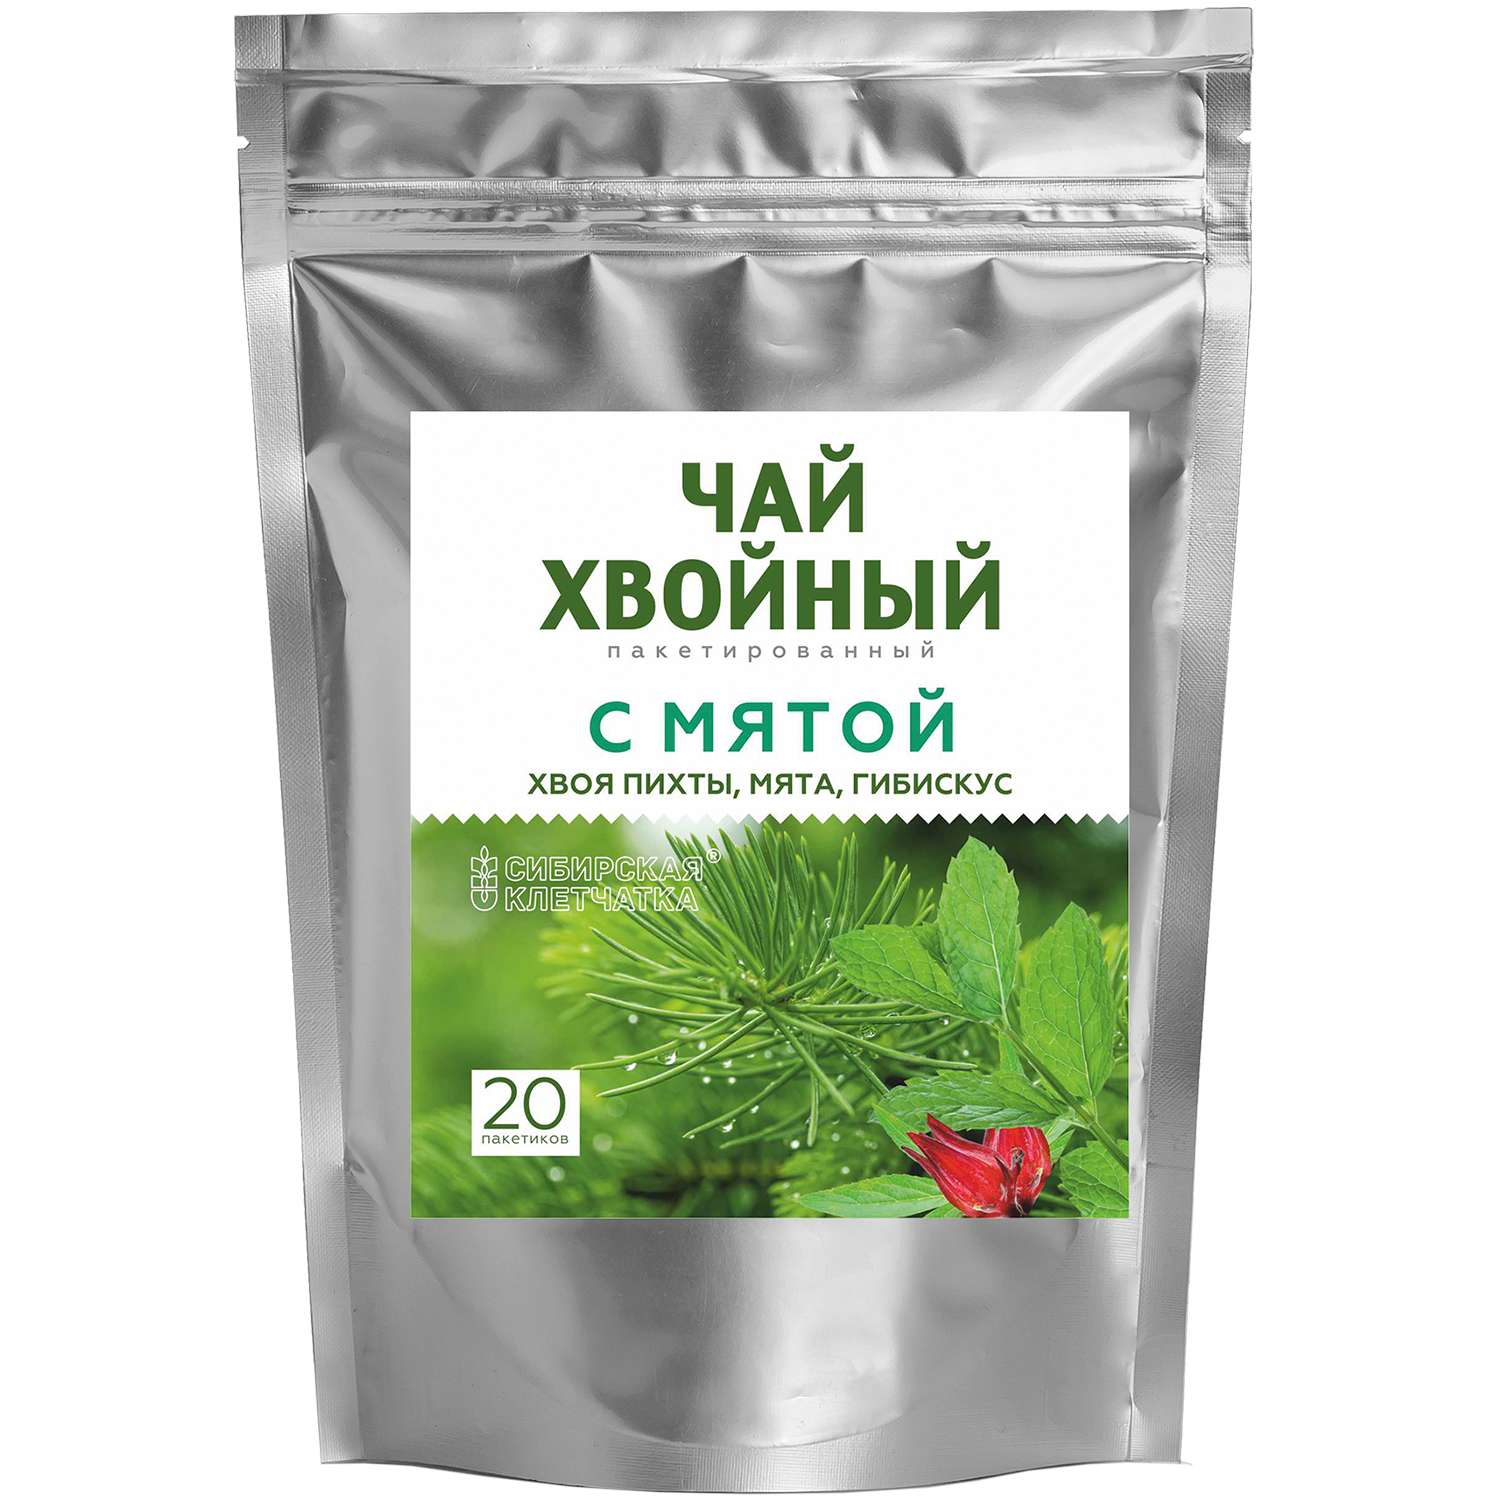 Чай хвойный Сибирская клетчатка с мятой 2г*20пакетиков - фото 1